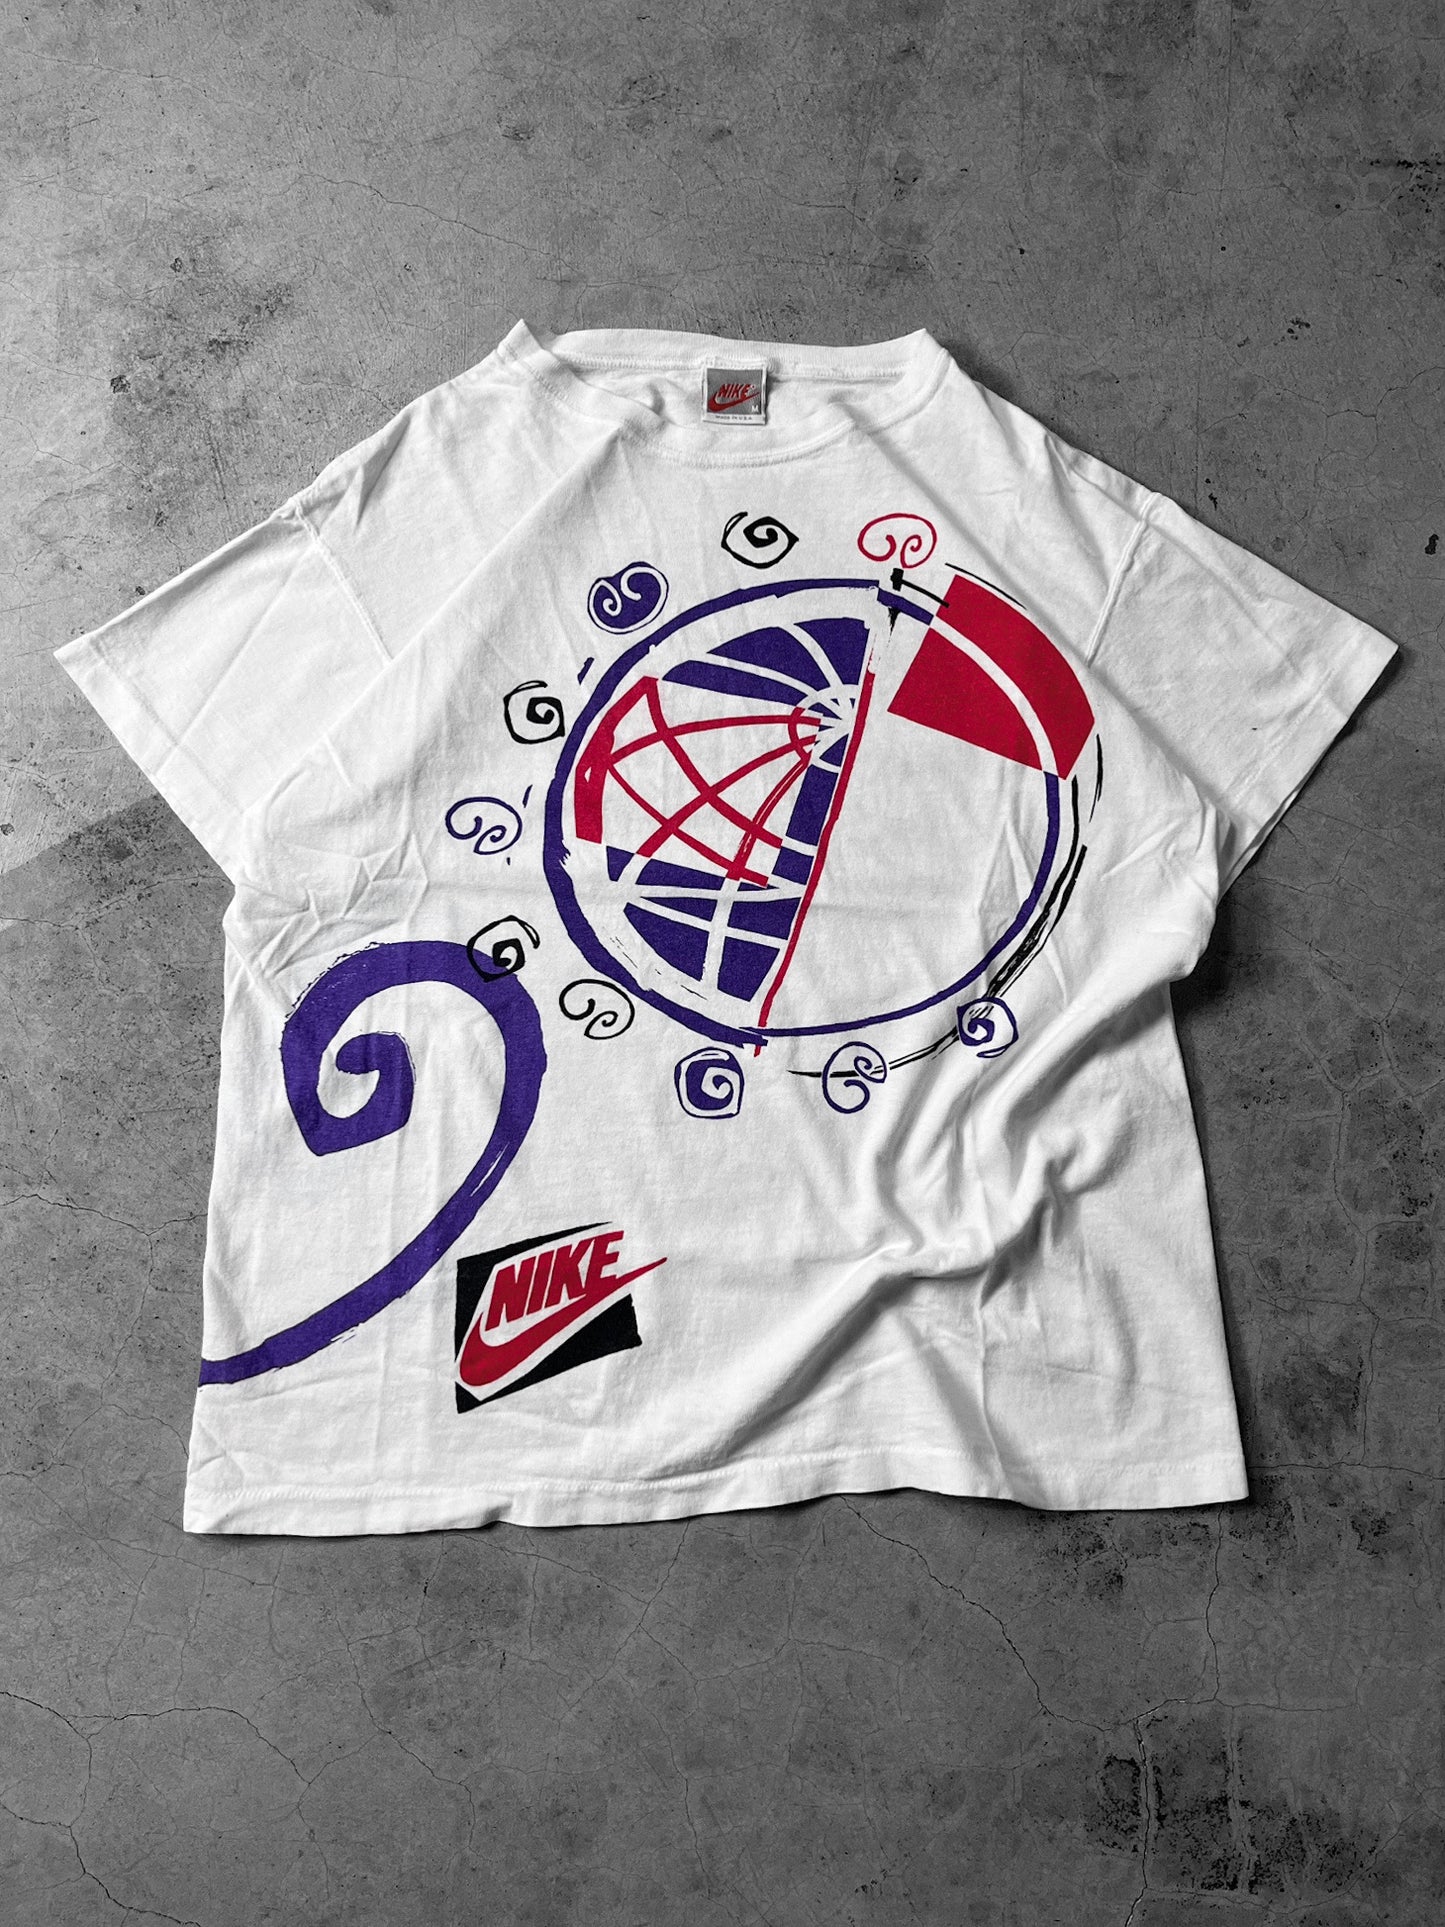 90’s Nike ‘Swirl’ Shirt - M